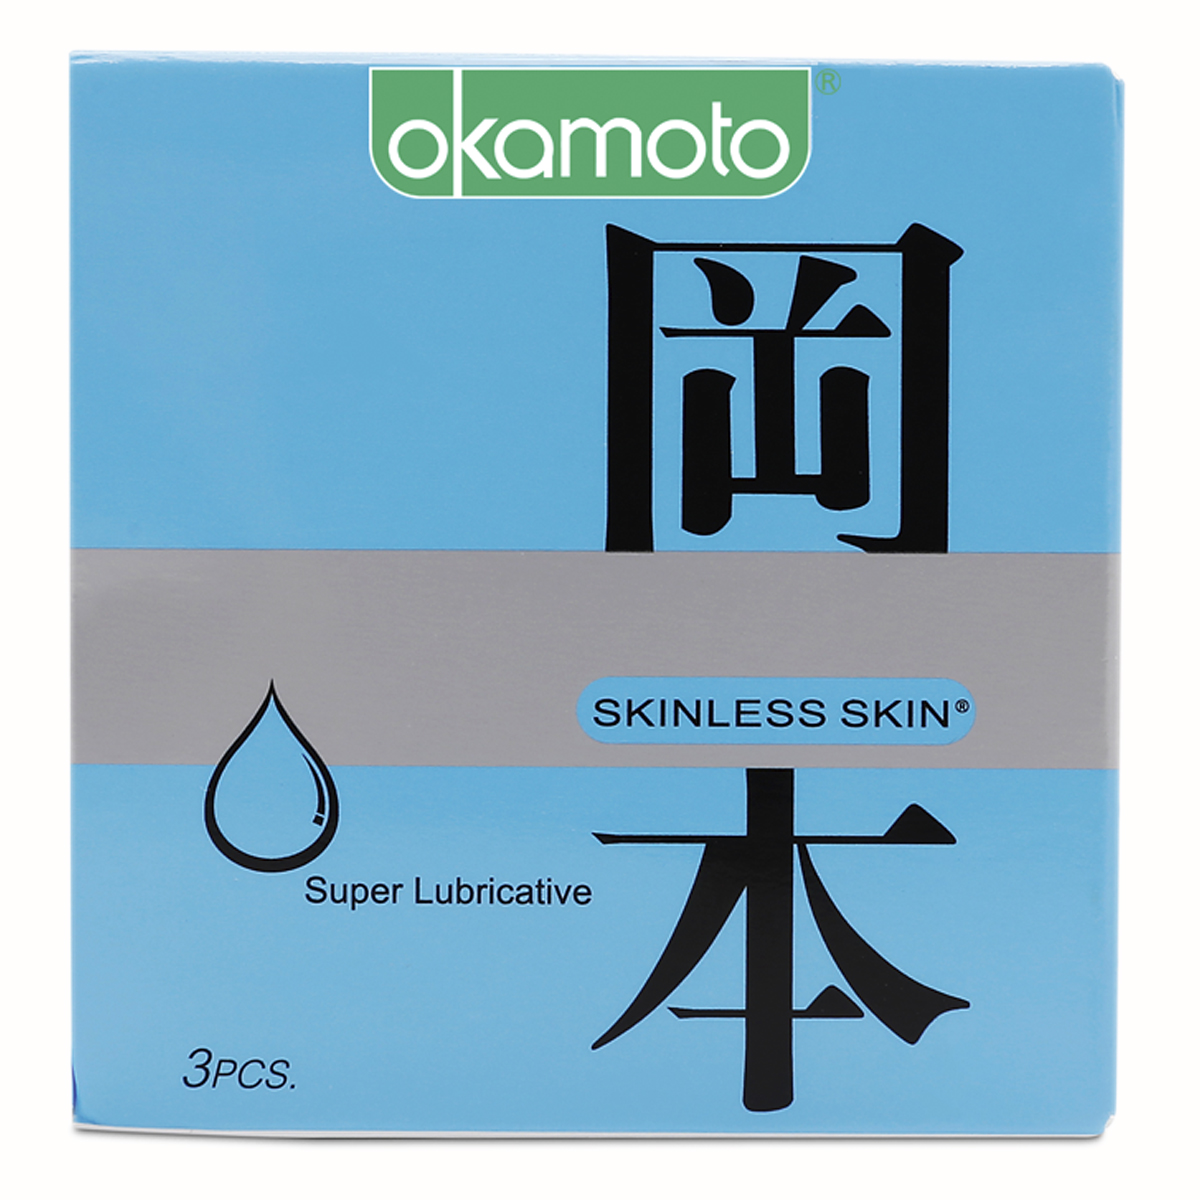 Bao cao su thêm chất bôi trơn,Sáng bóng mềm mại Okamoto Skinless Skin Supper Lub-3's được sản xuất hoàn toàn bằng cao su thiên nhiên cao cấp cũng như đáp ứng các yêu cầu và điều kiện sản xuất nghiêm ngặt, đảm bảo an toàn tối đa cho người sử dụng.